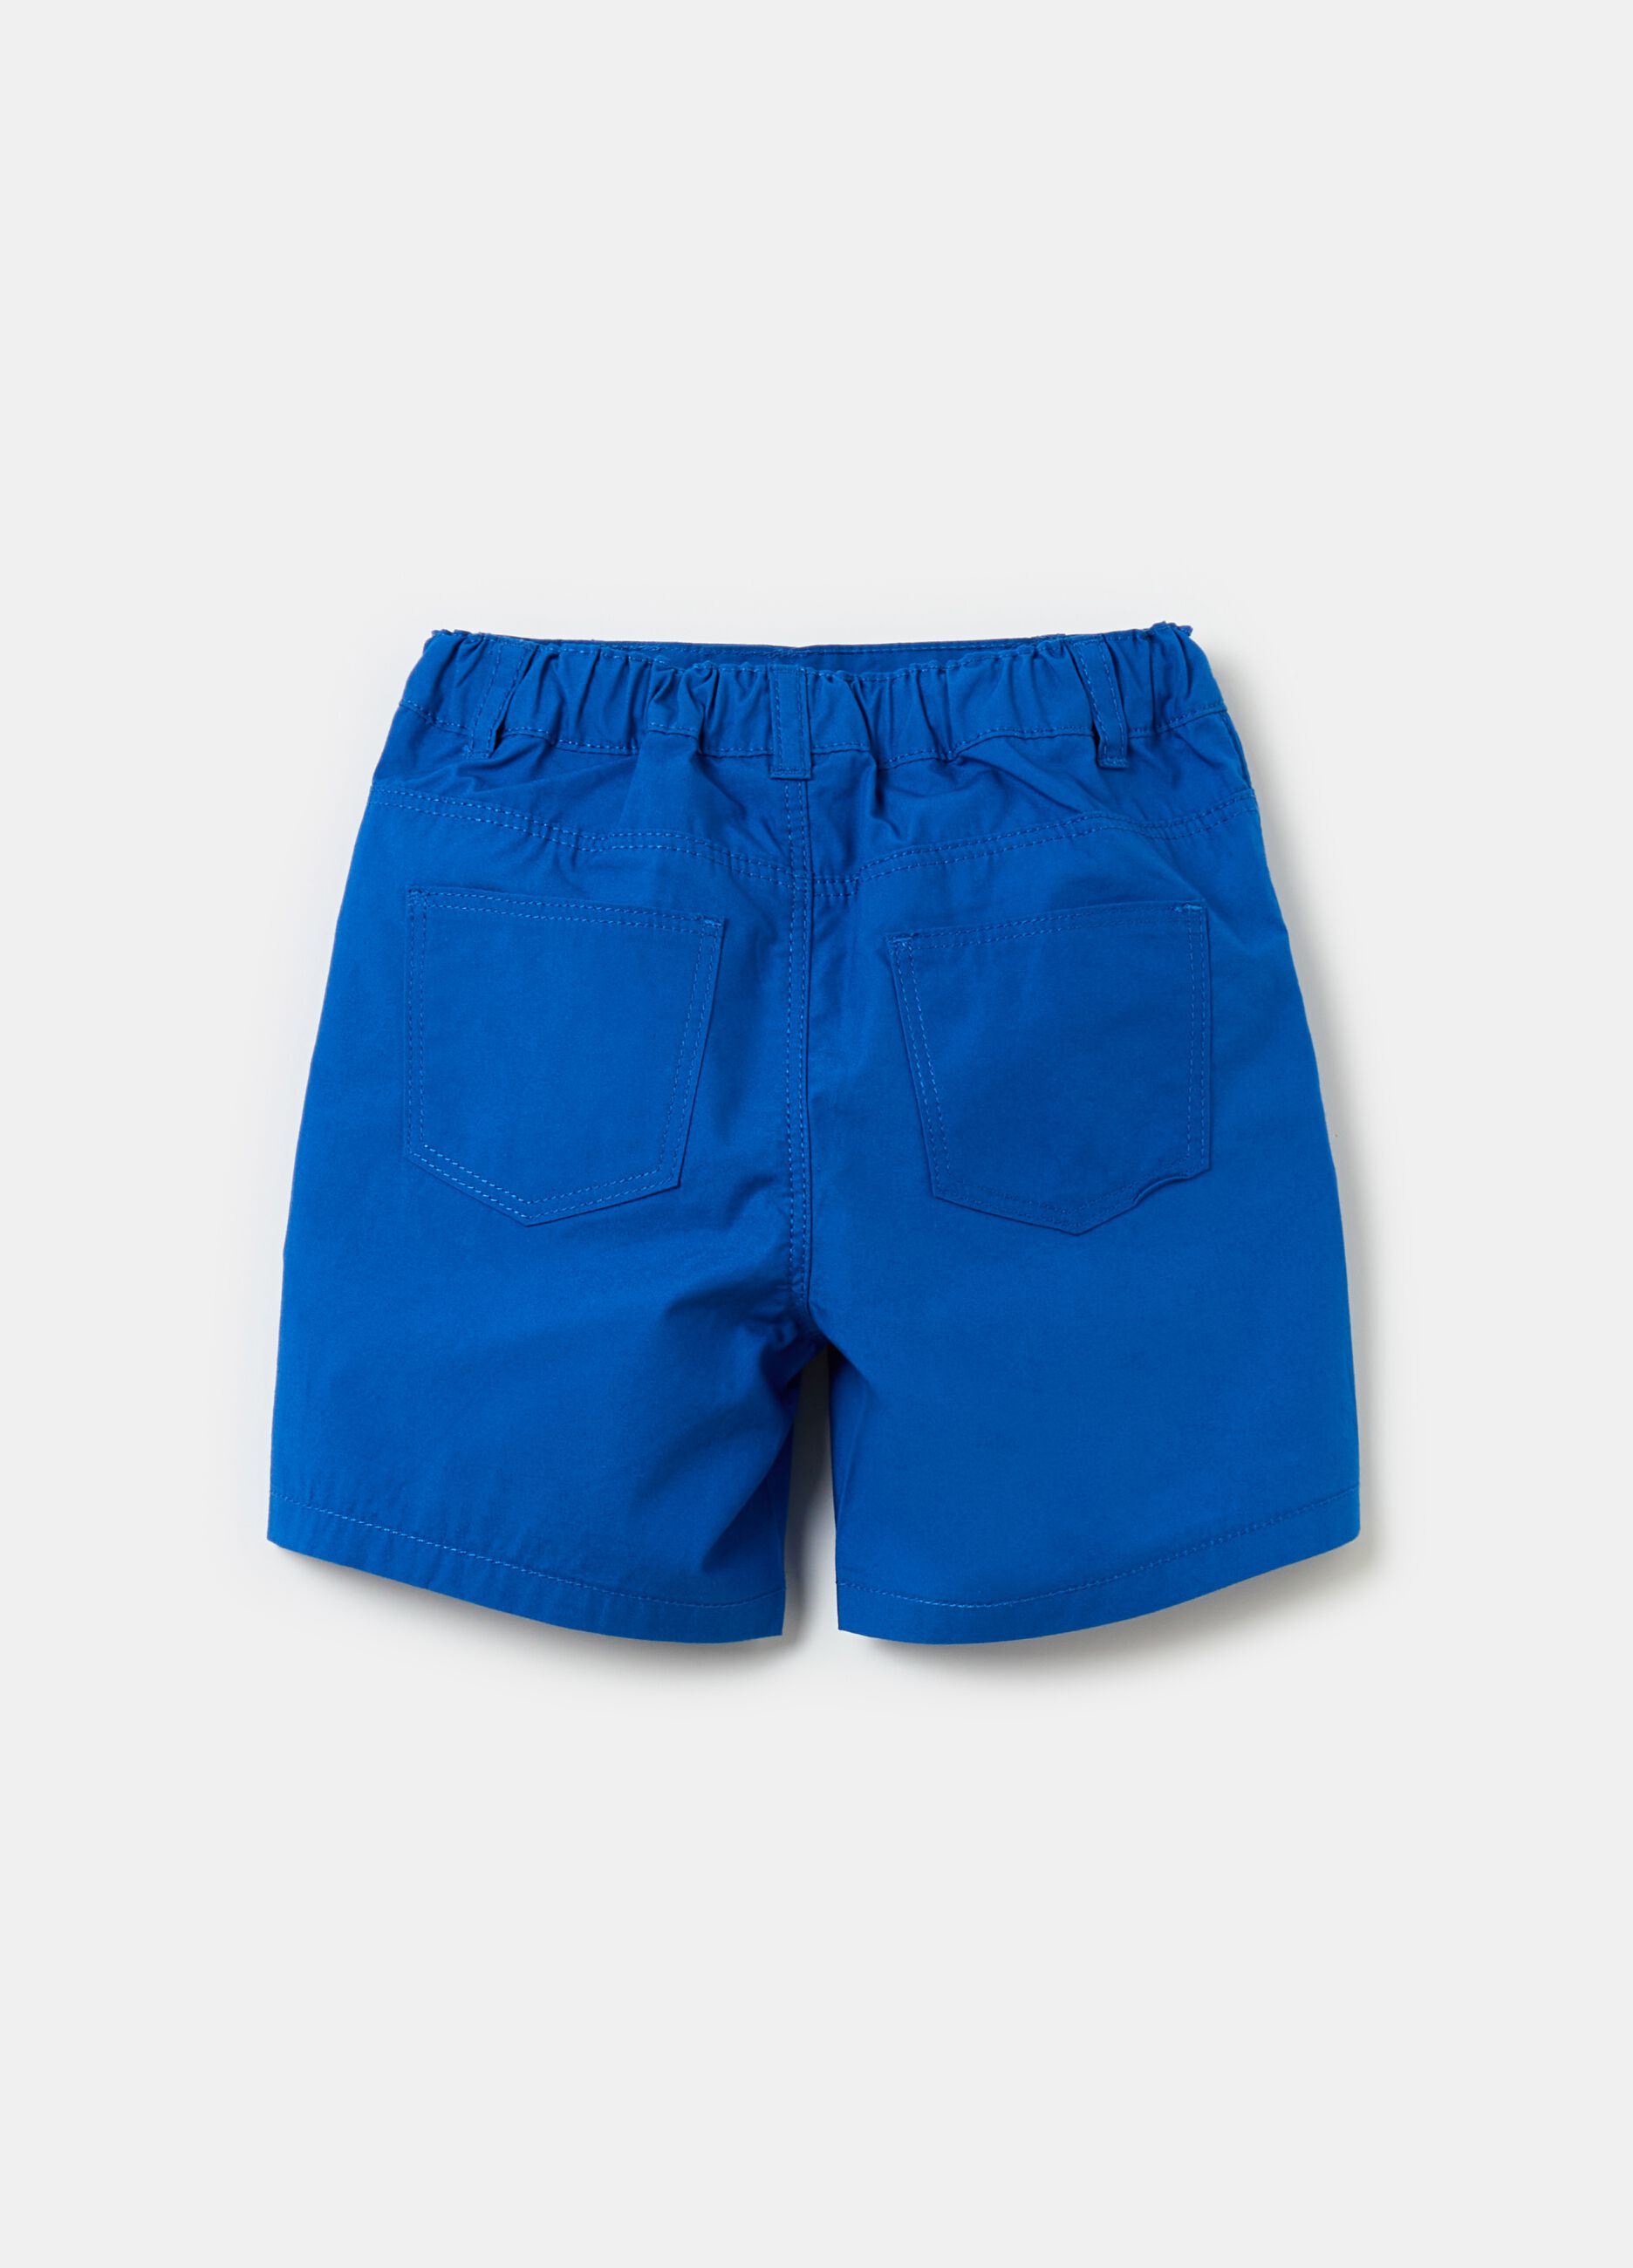 Poplin shorts with pockets